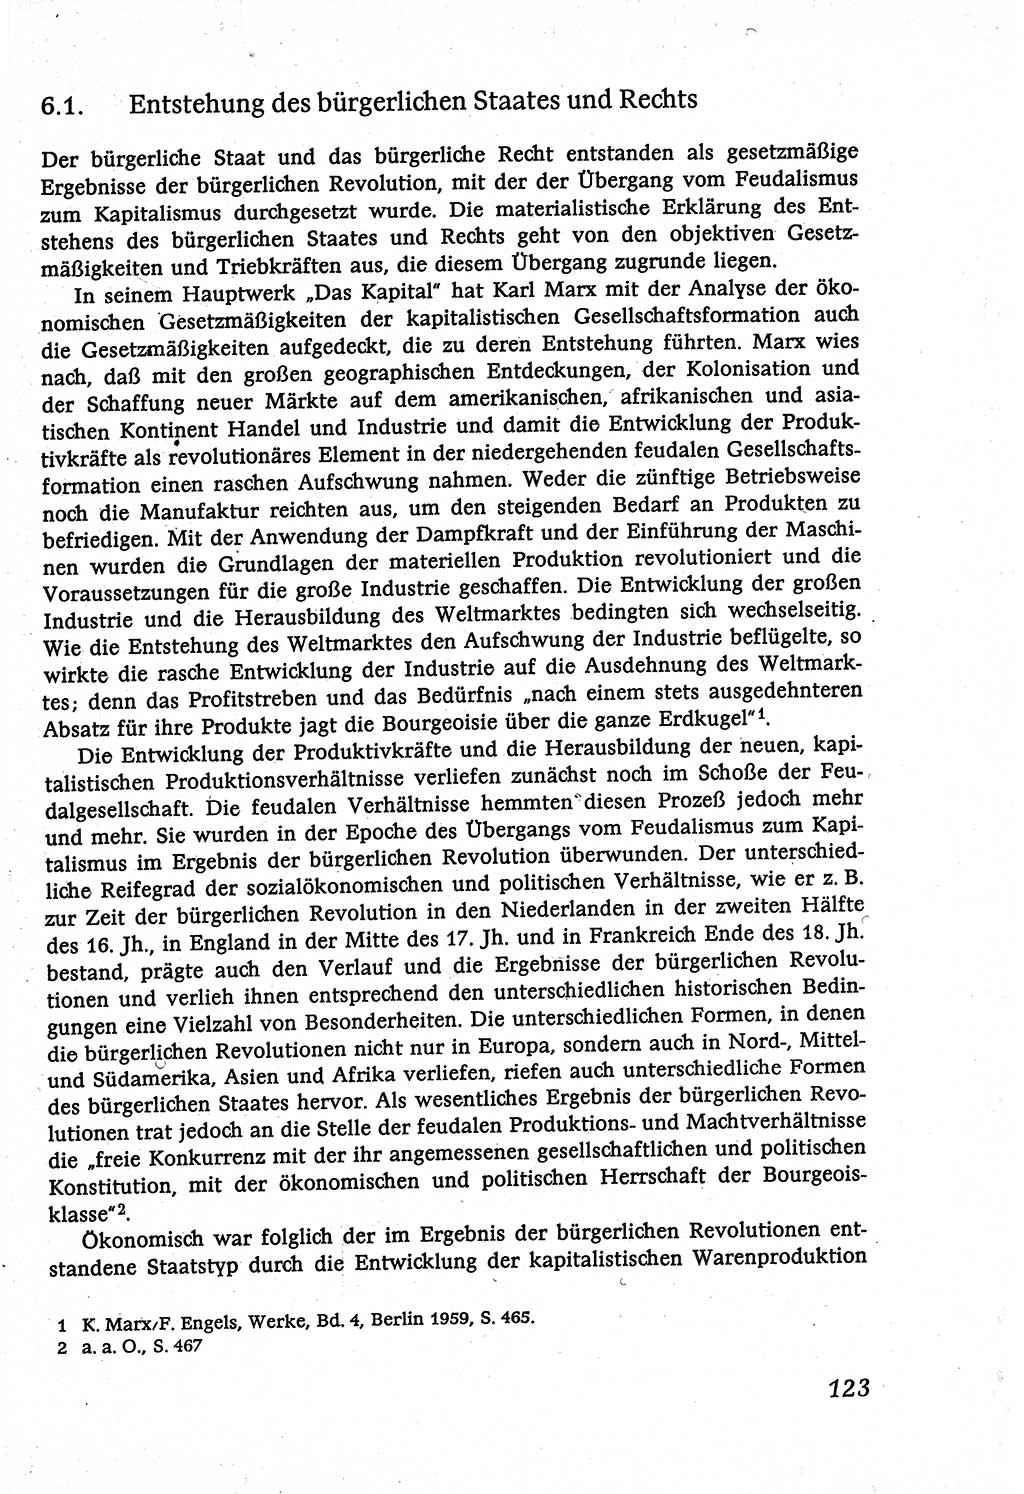 Marxistisch-leninistische (ML) Staats- und Rechtstheorie [Deutsche Demokratische Republik (DDR)], Lehrbuch 1980, Seite 123 (ML St.-R.-Th. DDR Lb. 1980, S. 123)